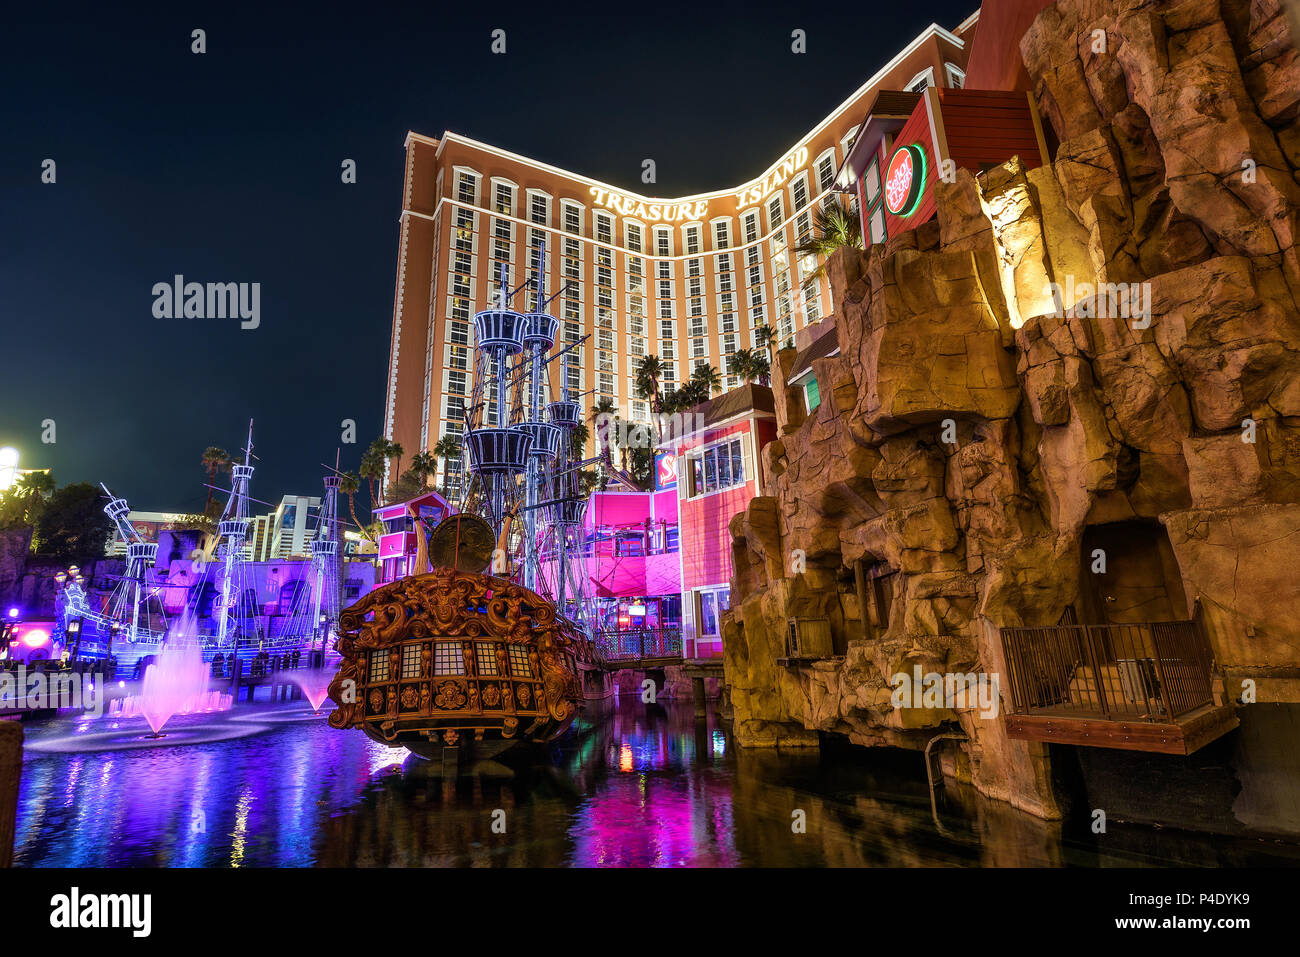 Treasure Island Hotel and Casino resort at night Stock Photo